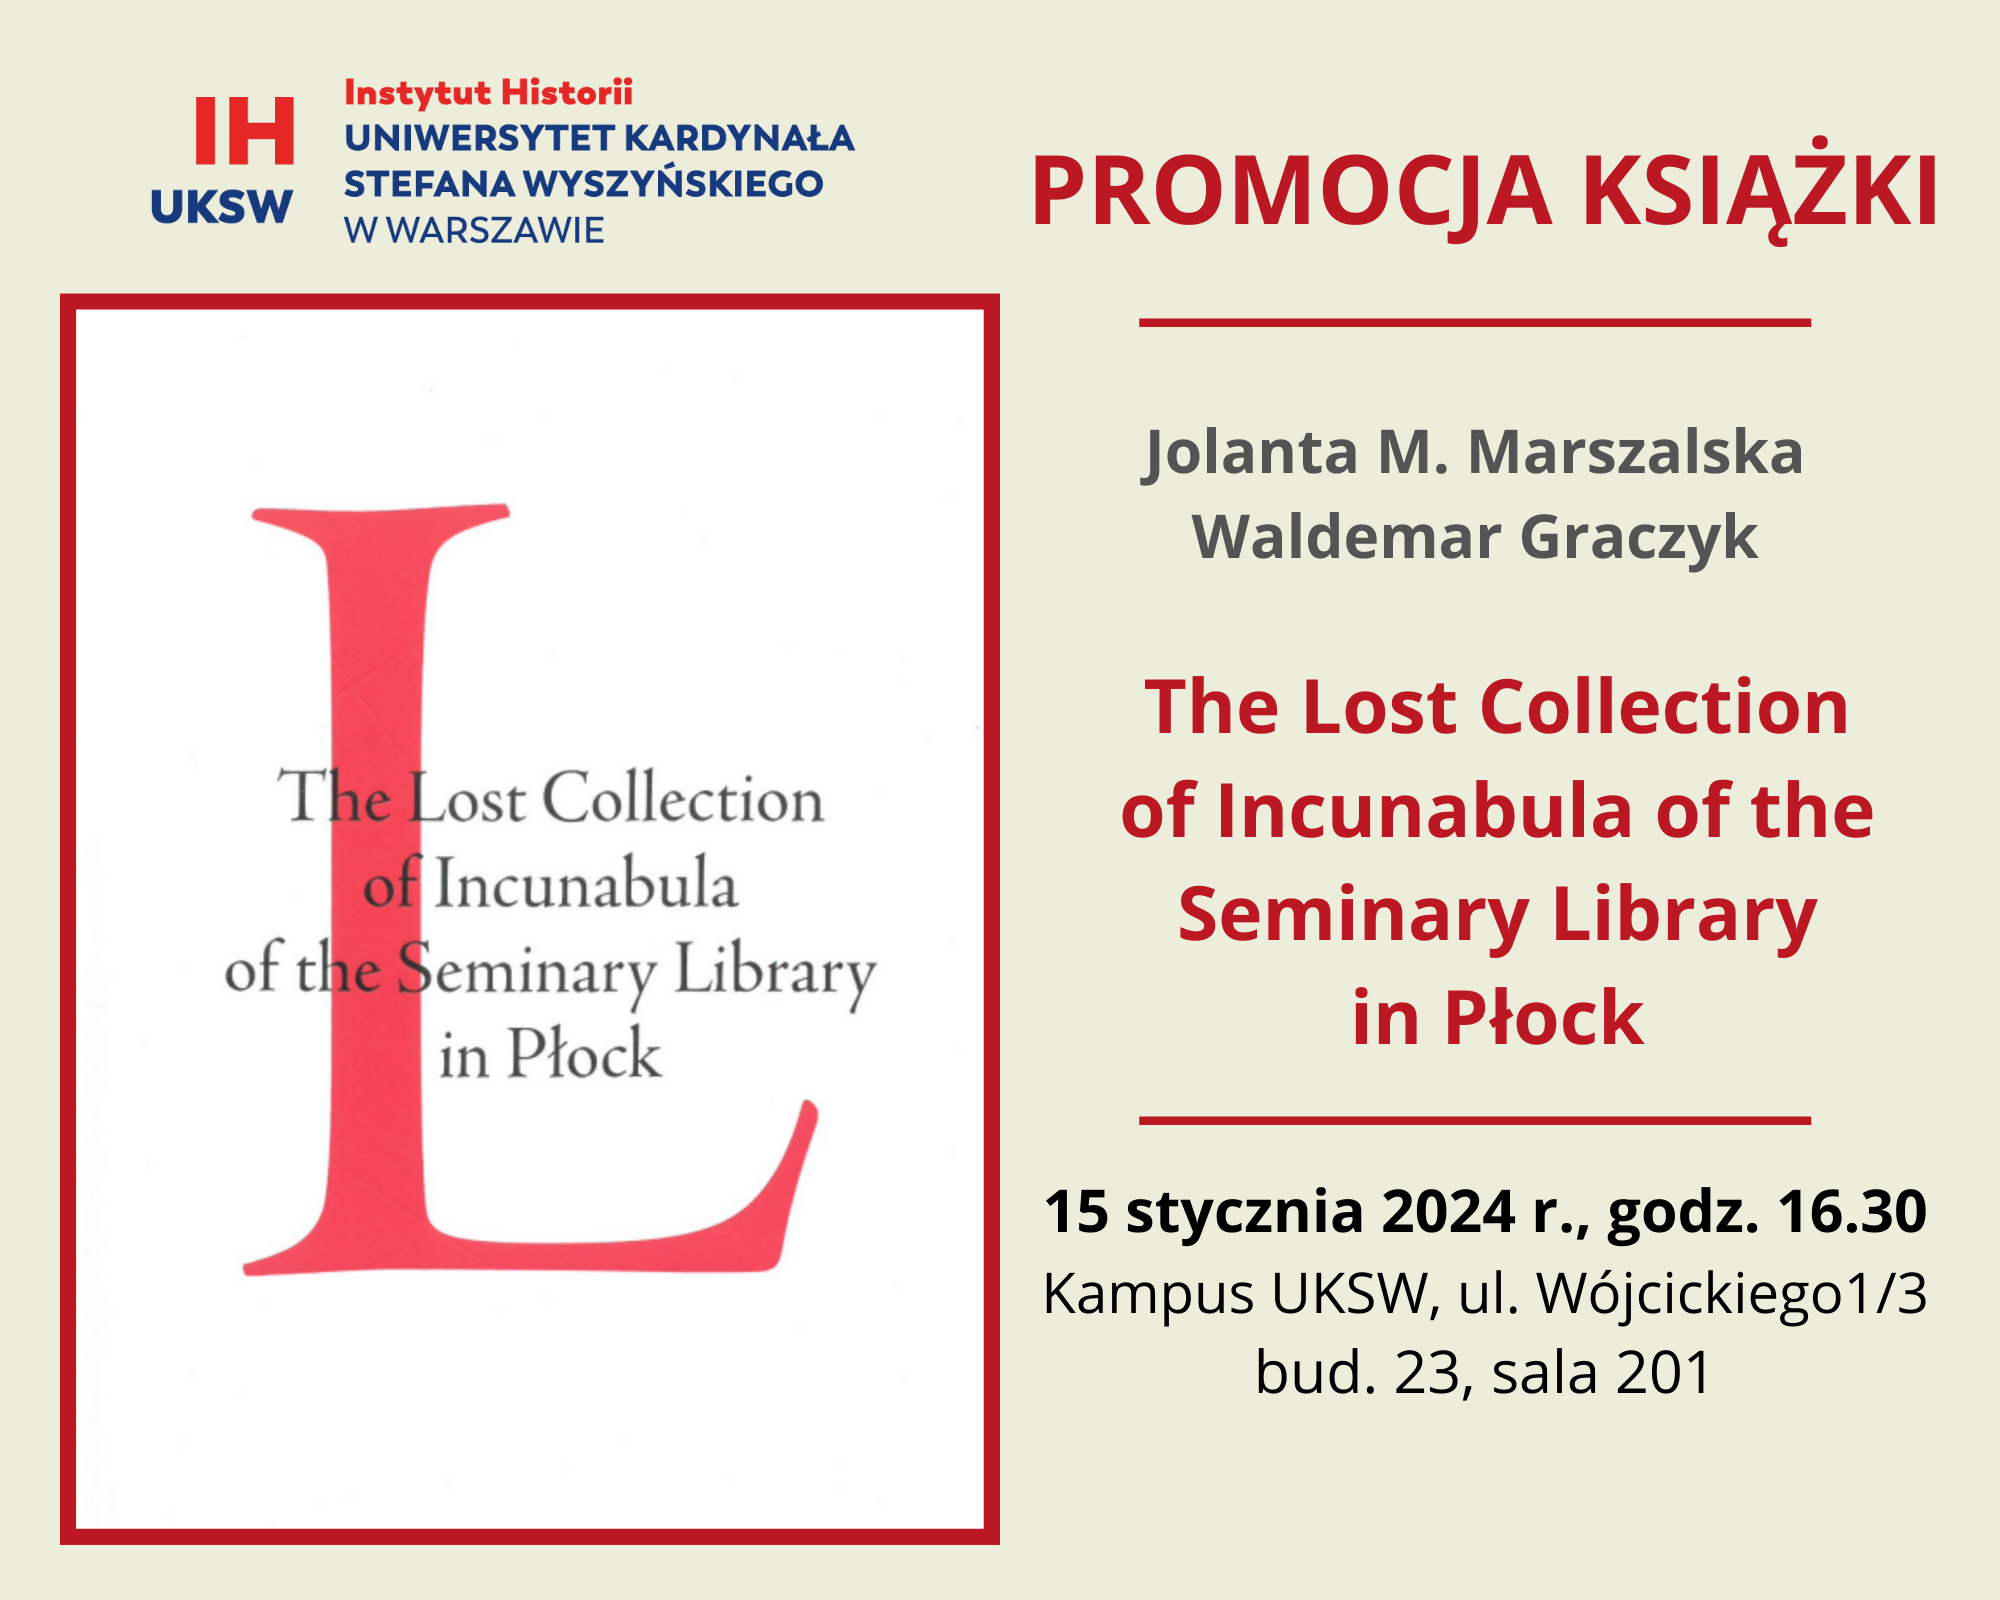 Promocja książki prof. Jolanty M. Marszalskiej i ks. prof. Waldemara Graczyka